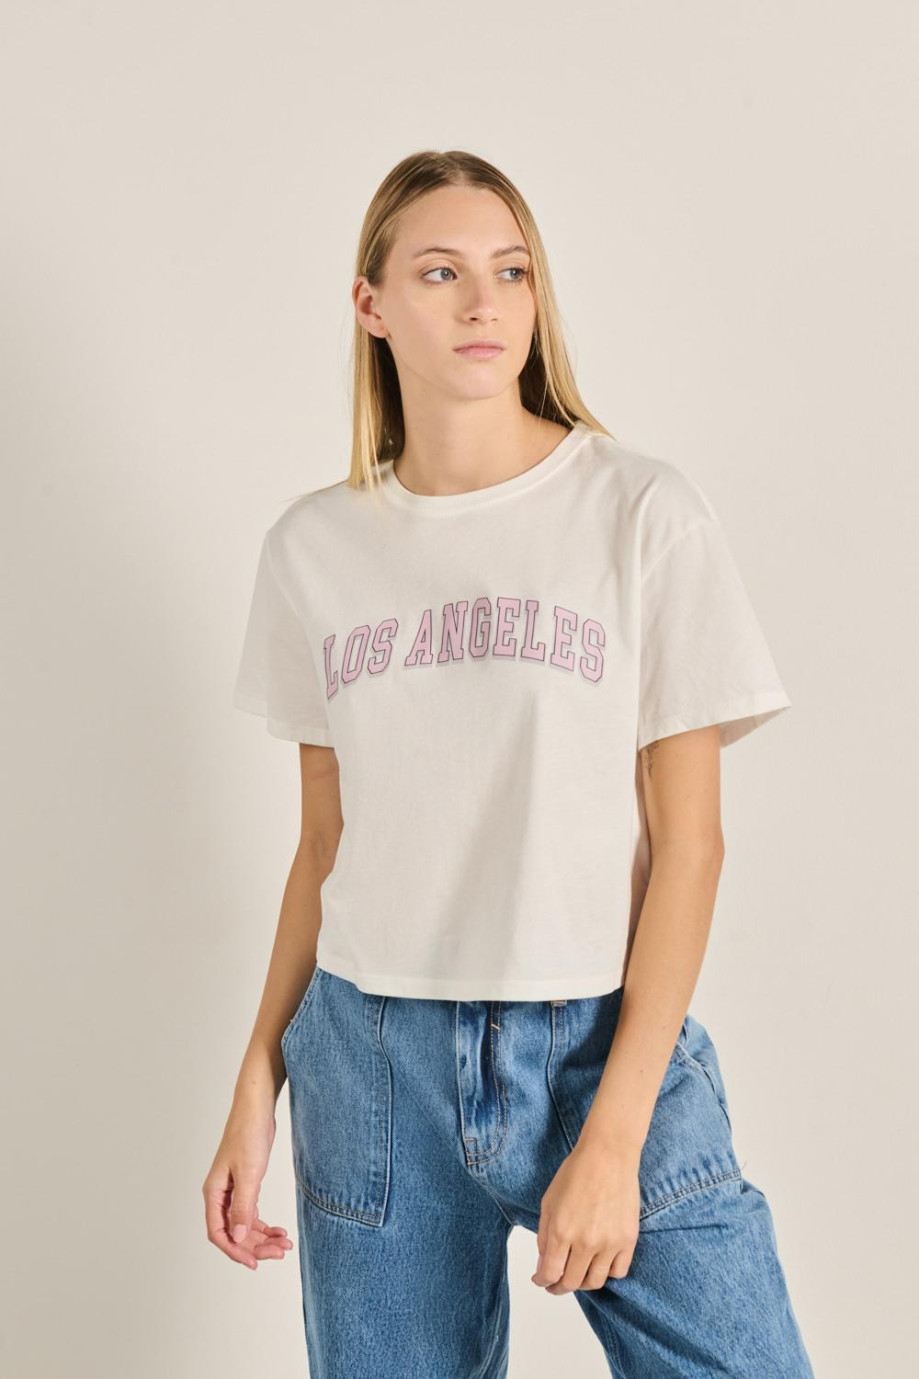 Camiseta crop top en algodón unicolor con arte college